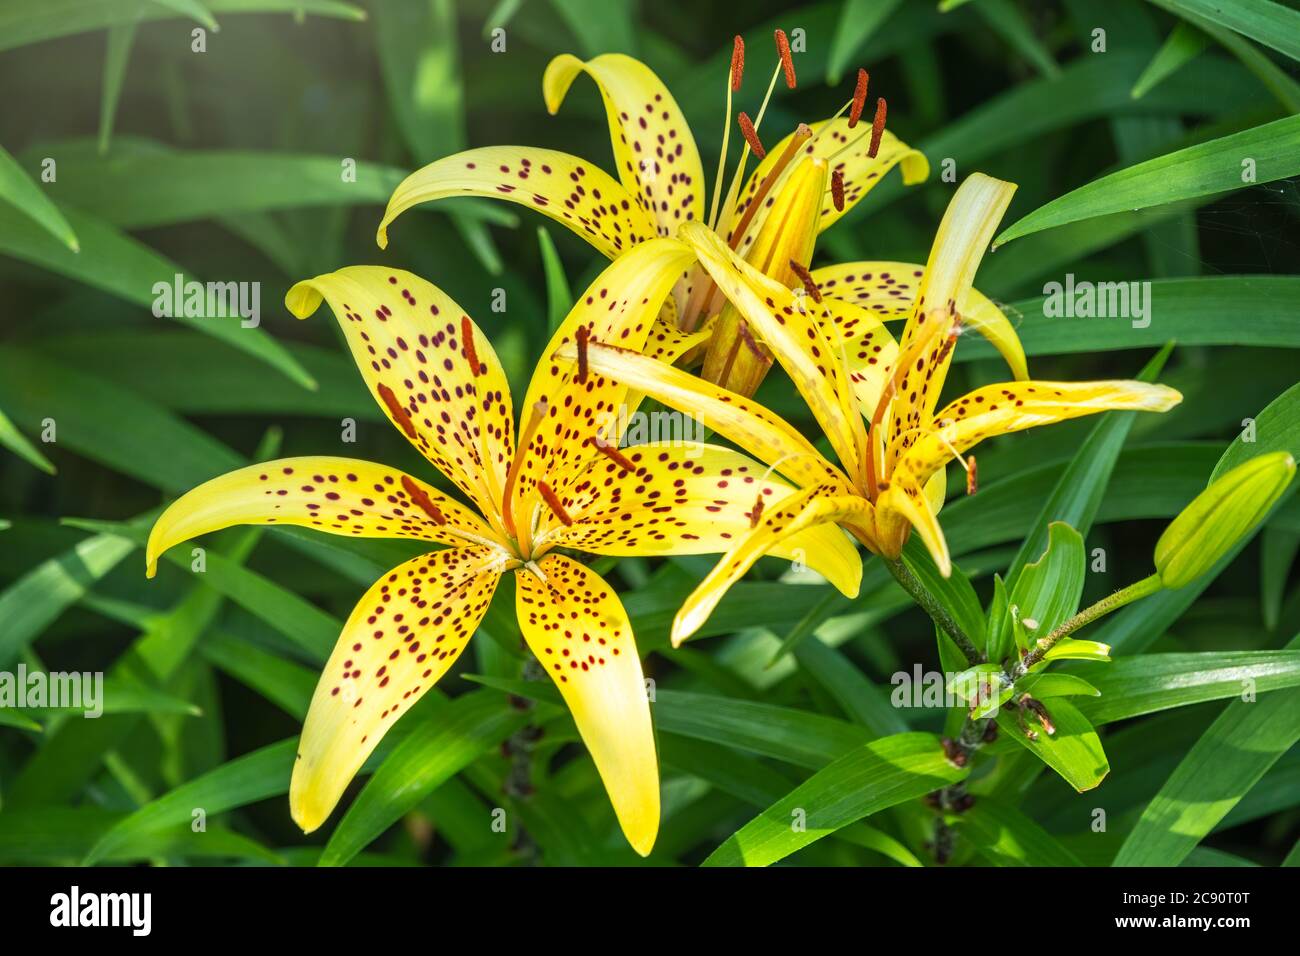 Verano amarillo lirio flor primer plano. Lilium pardalinum, también conocido como leopardo o lirio de pantera, es una planta perenne bulbosa en flor en la familia del lirio, n. Foto de stock